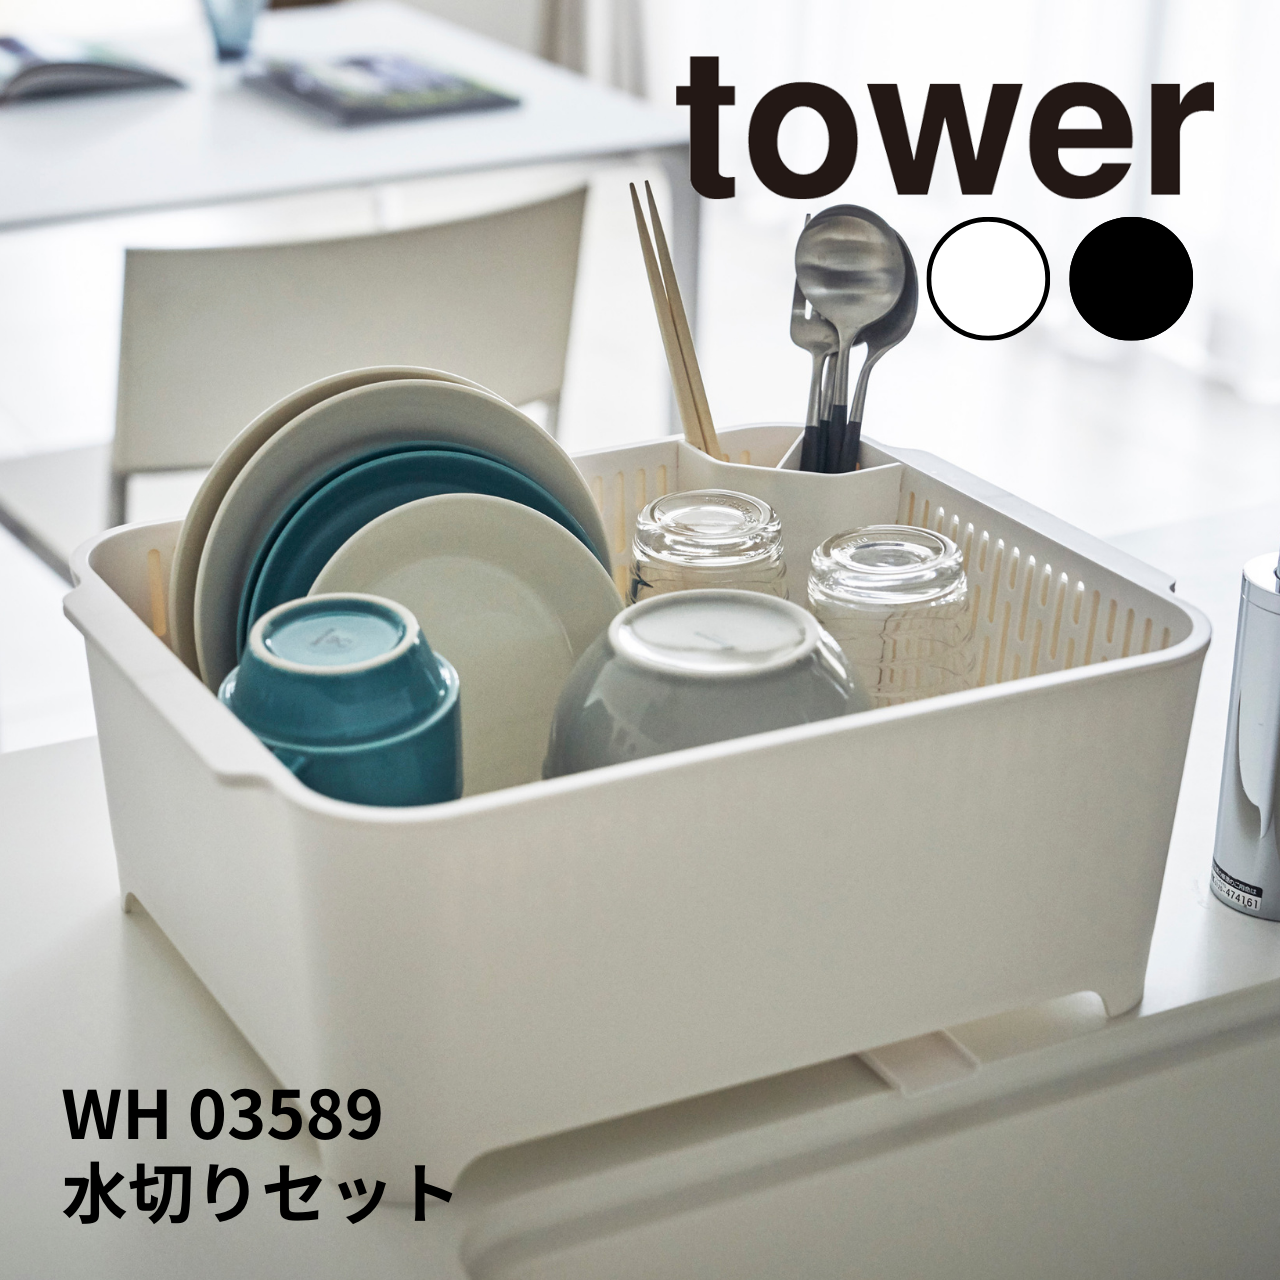 水切りセット タワー 山崎実業 tower 03589